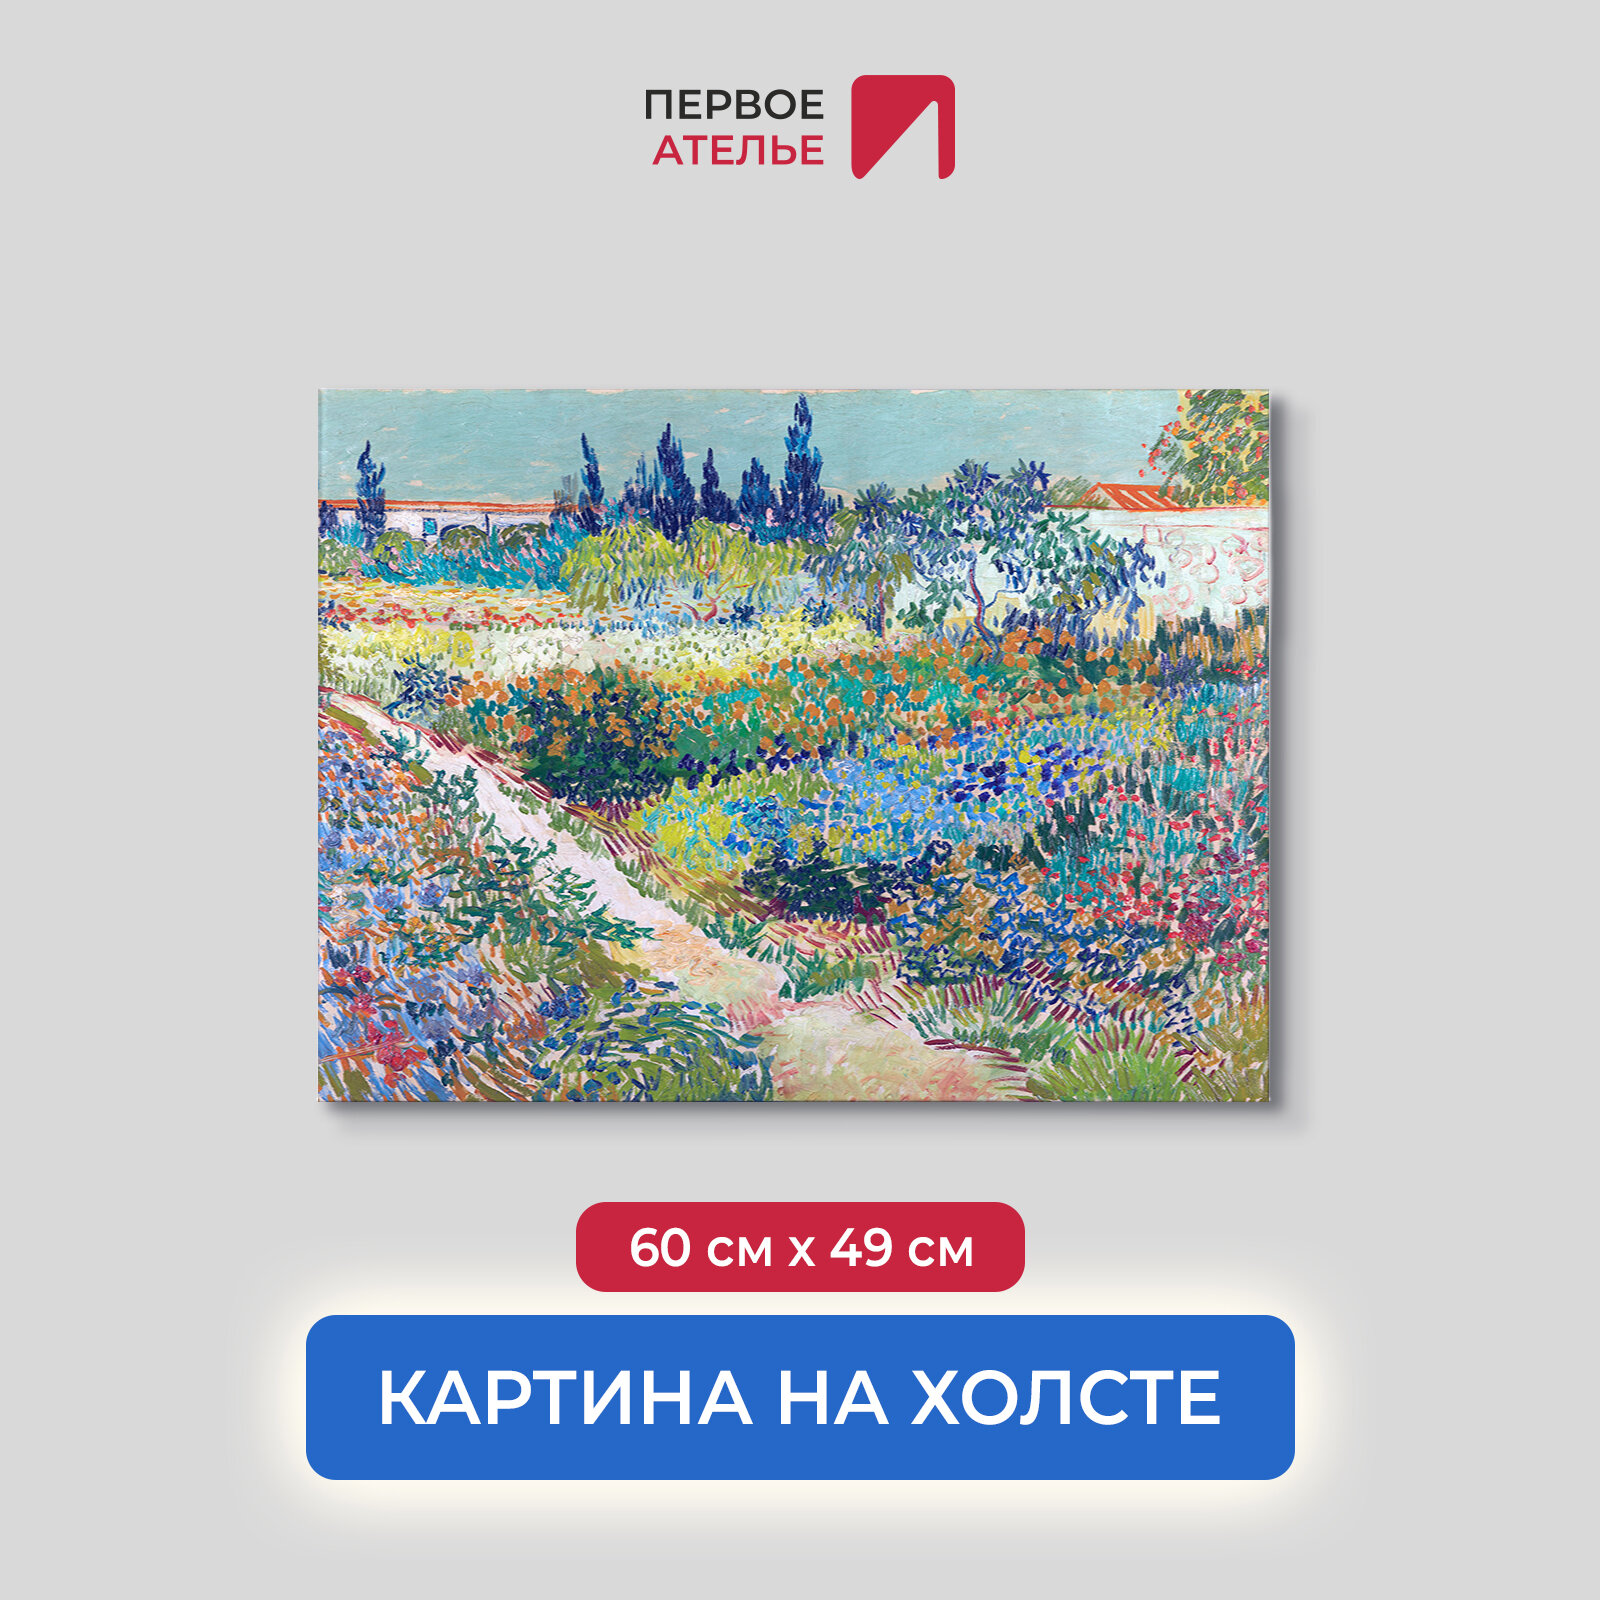 Постер для интерьера на стену первое ателье - репродукция картины Ван Гога "Цветущий сад с тропинкой" 60х49 см (ШхВ), на холсте